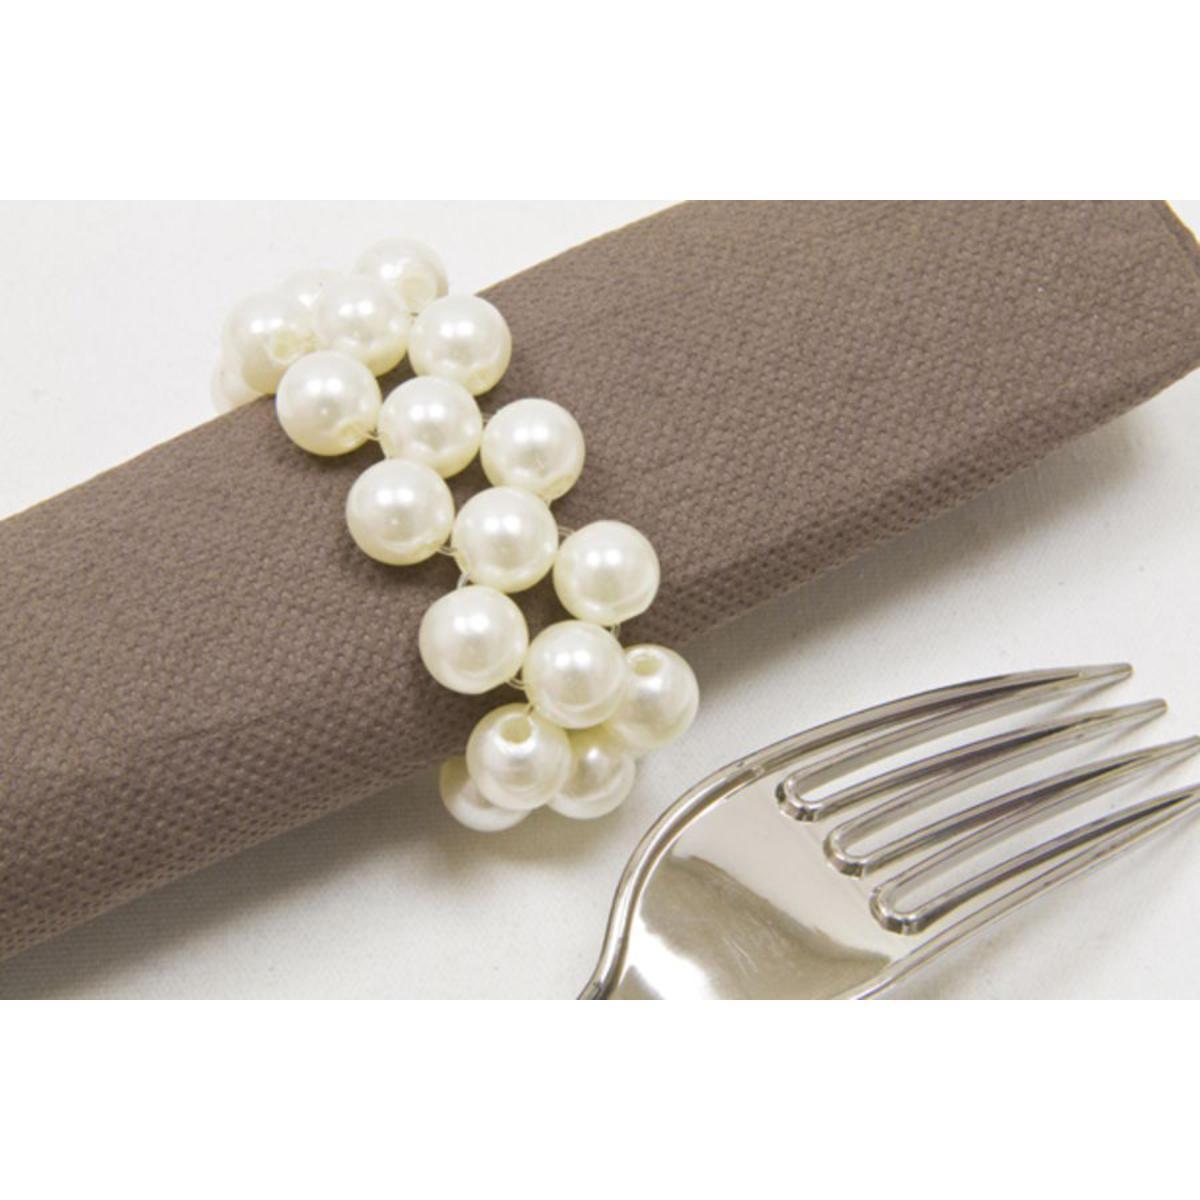 Lot de 2 ronds de serviette en perles - Plastique - 6,5 x 2,5 cm - Blanc ivoire